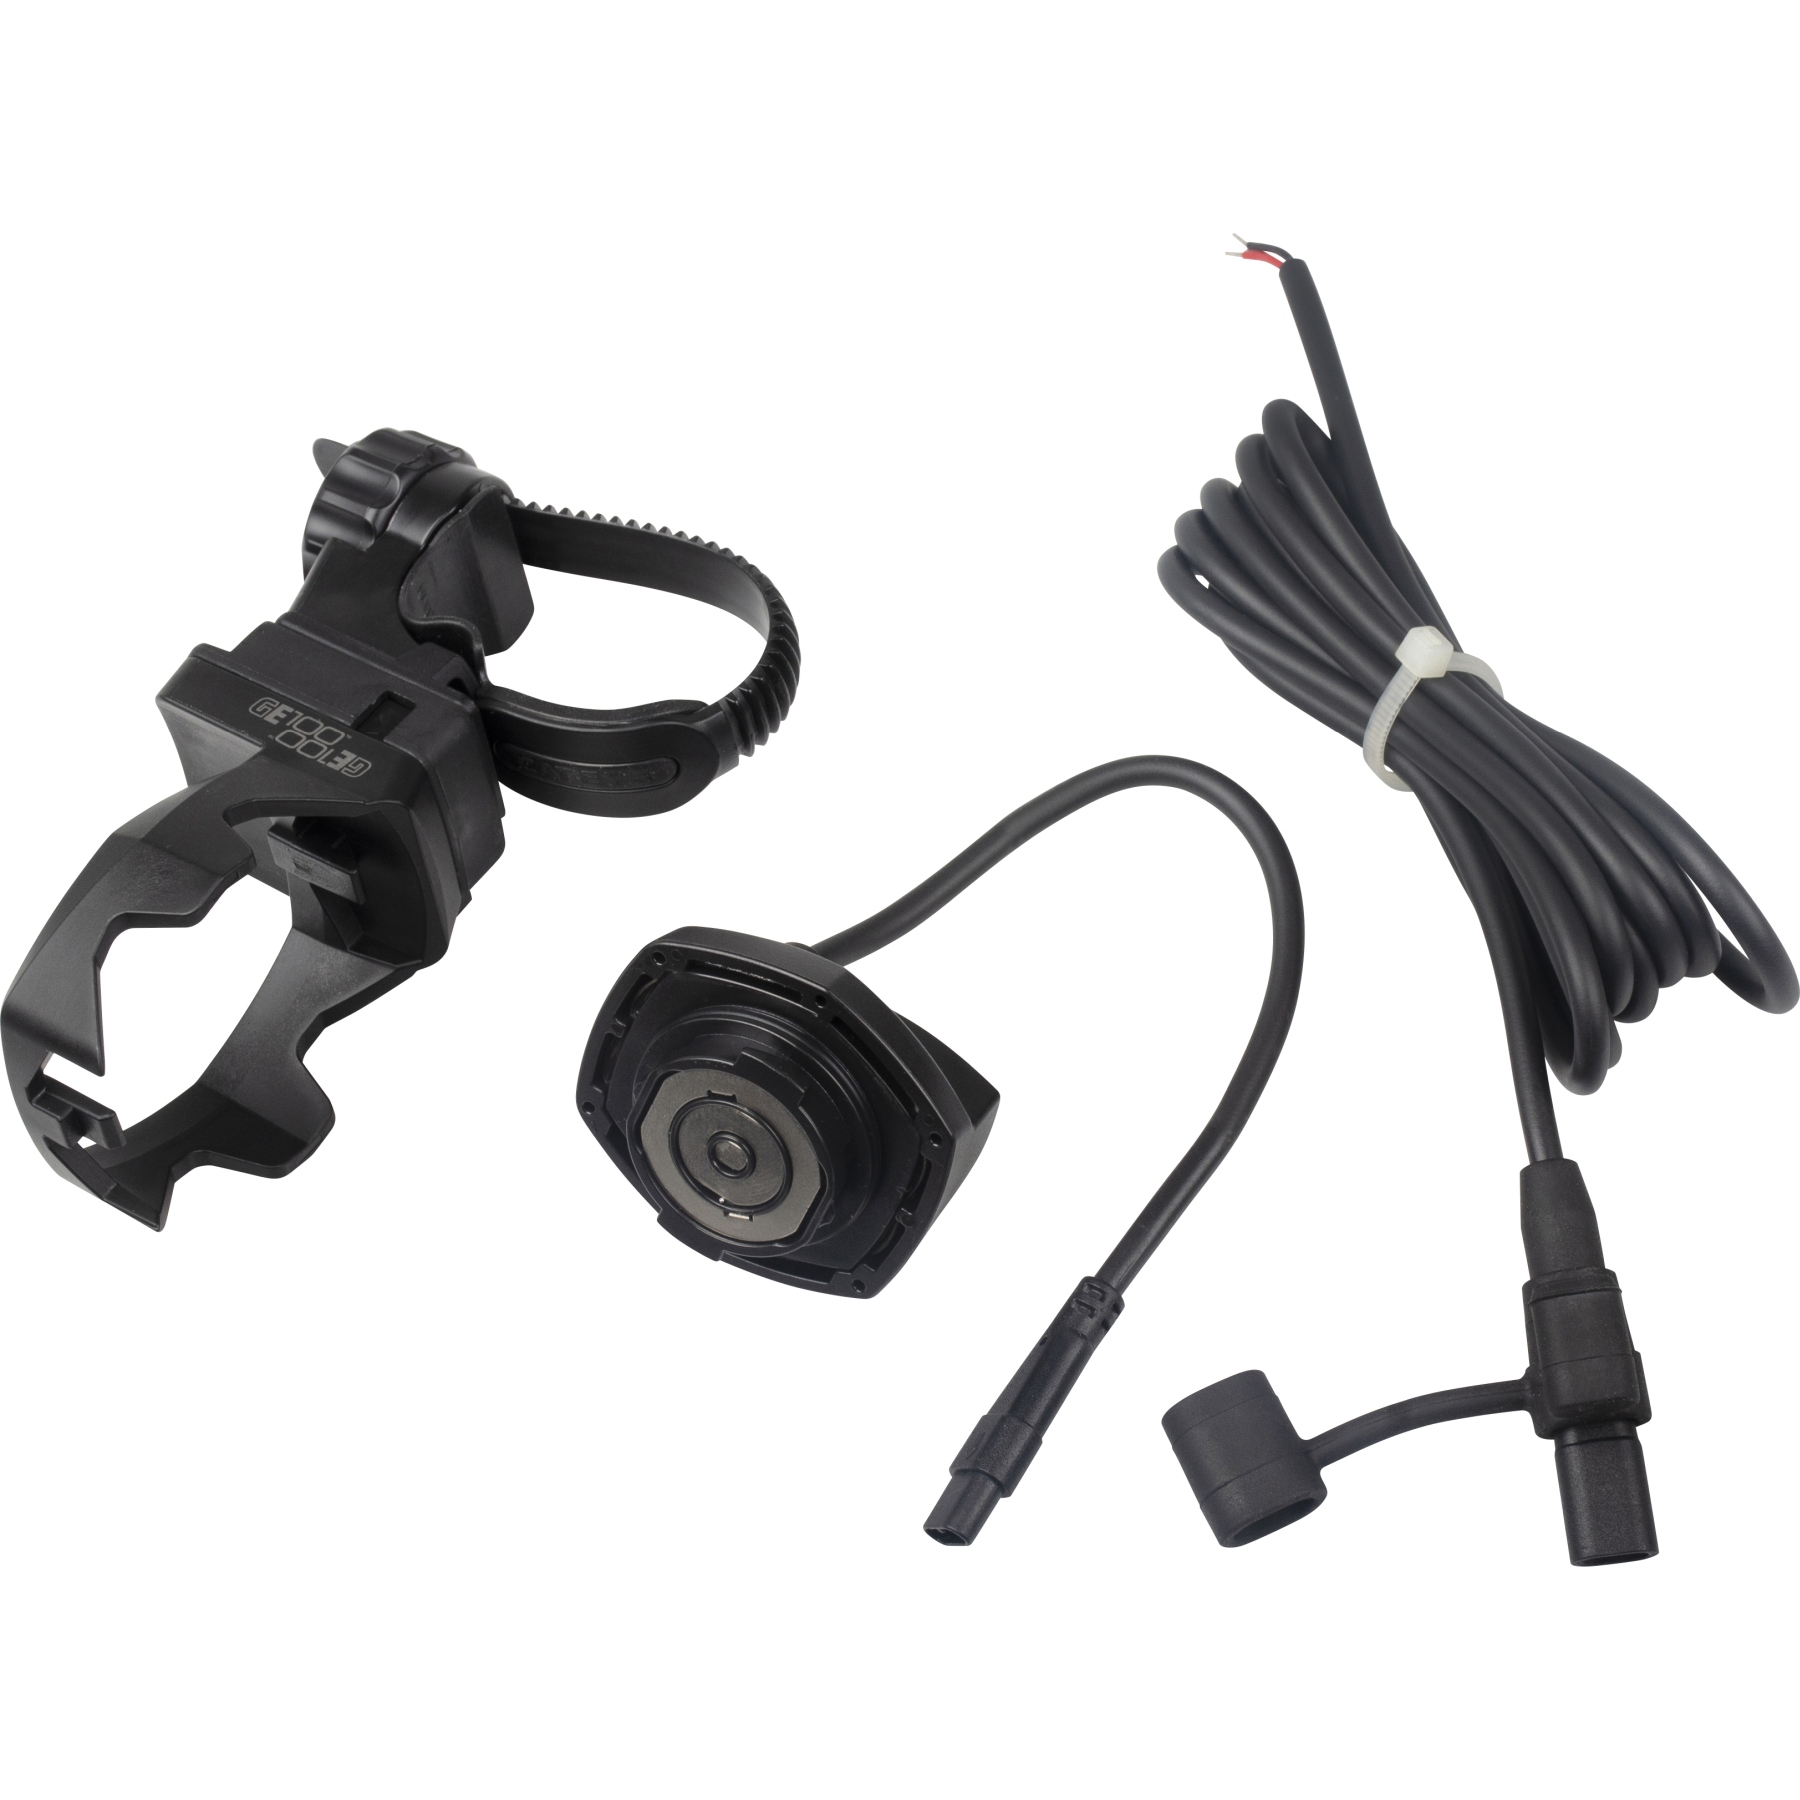 Productfoto van Cat Eye E-Bike Adapter Kit for Front Light GVolt 100 - black